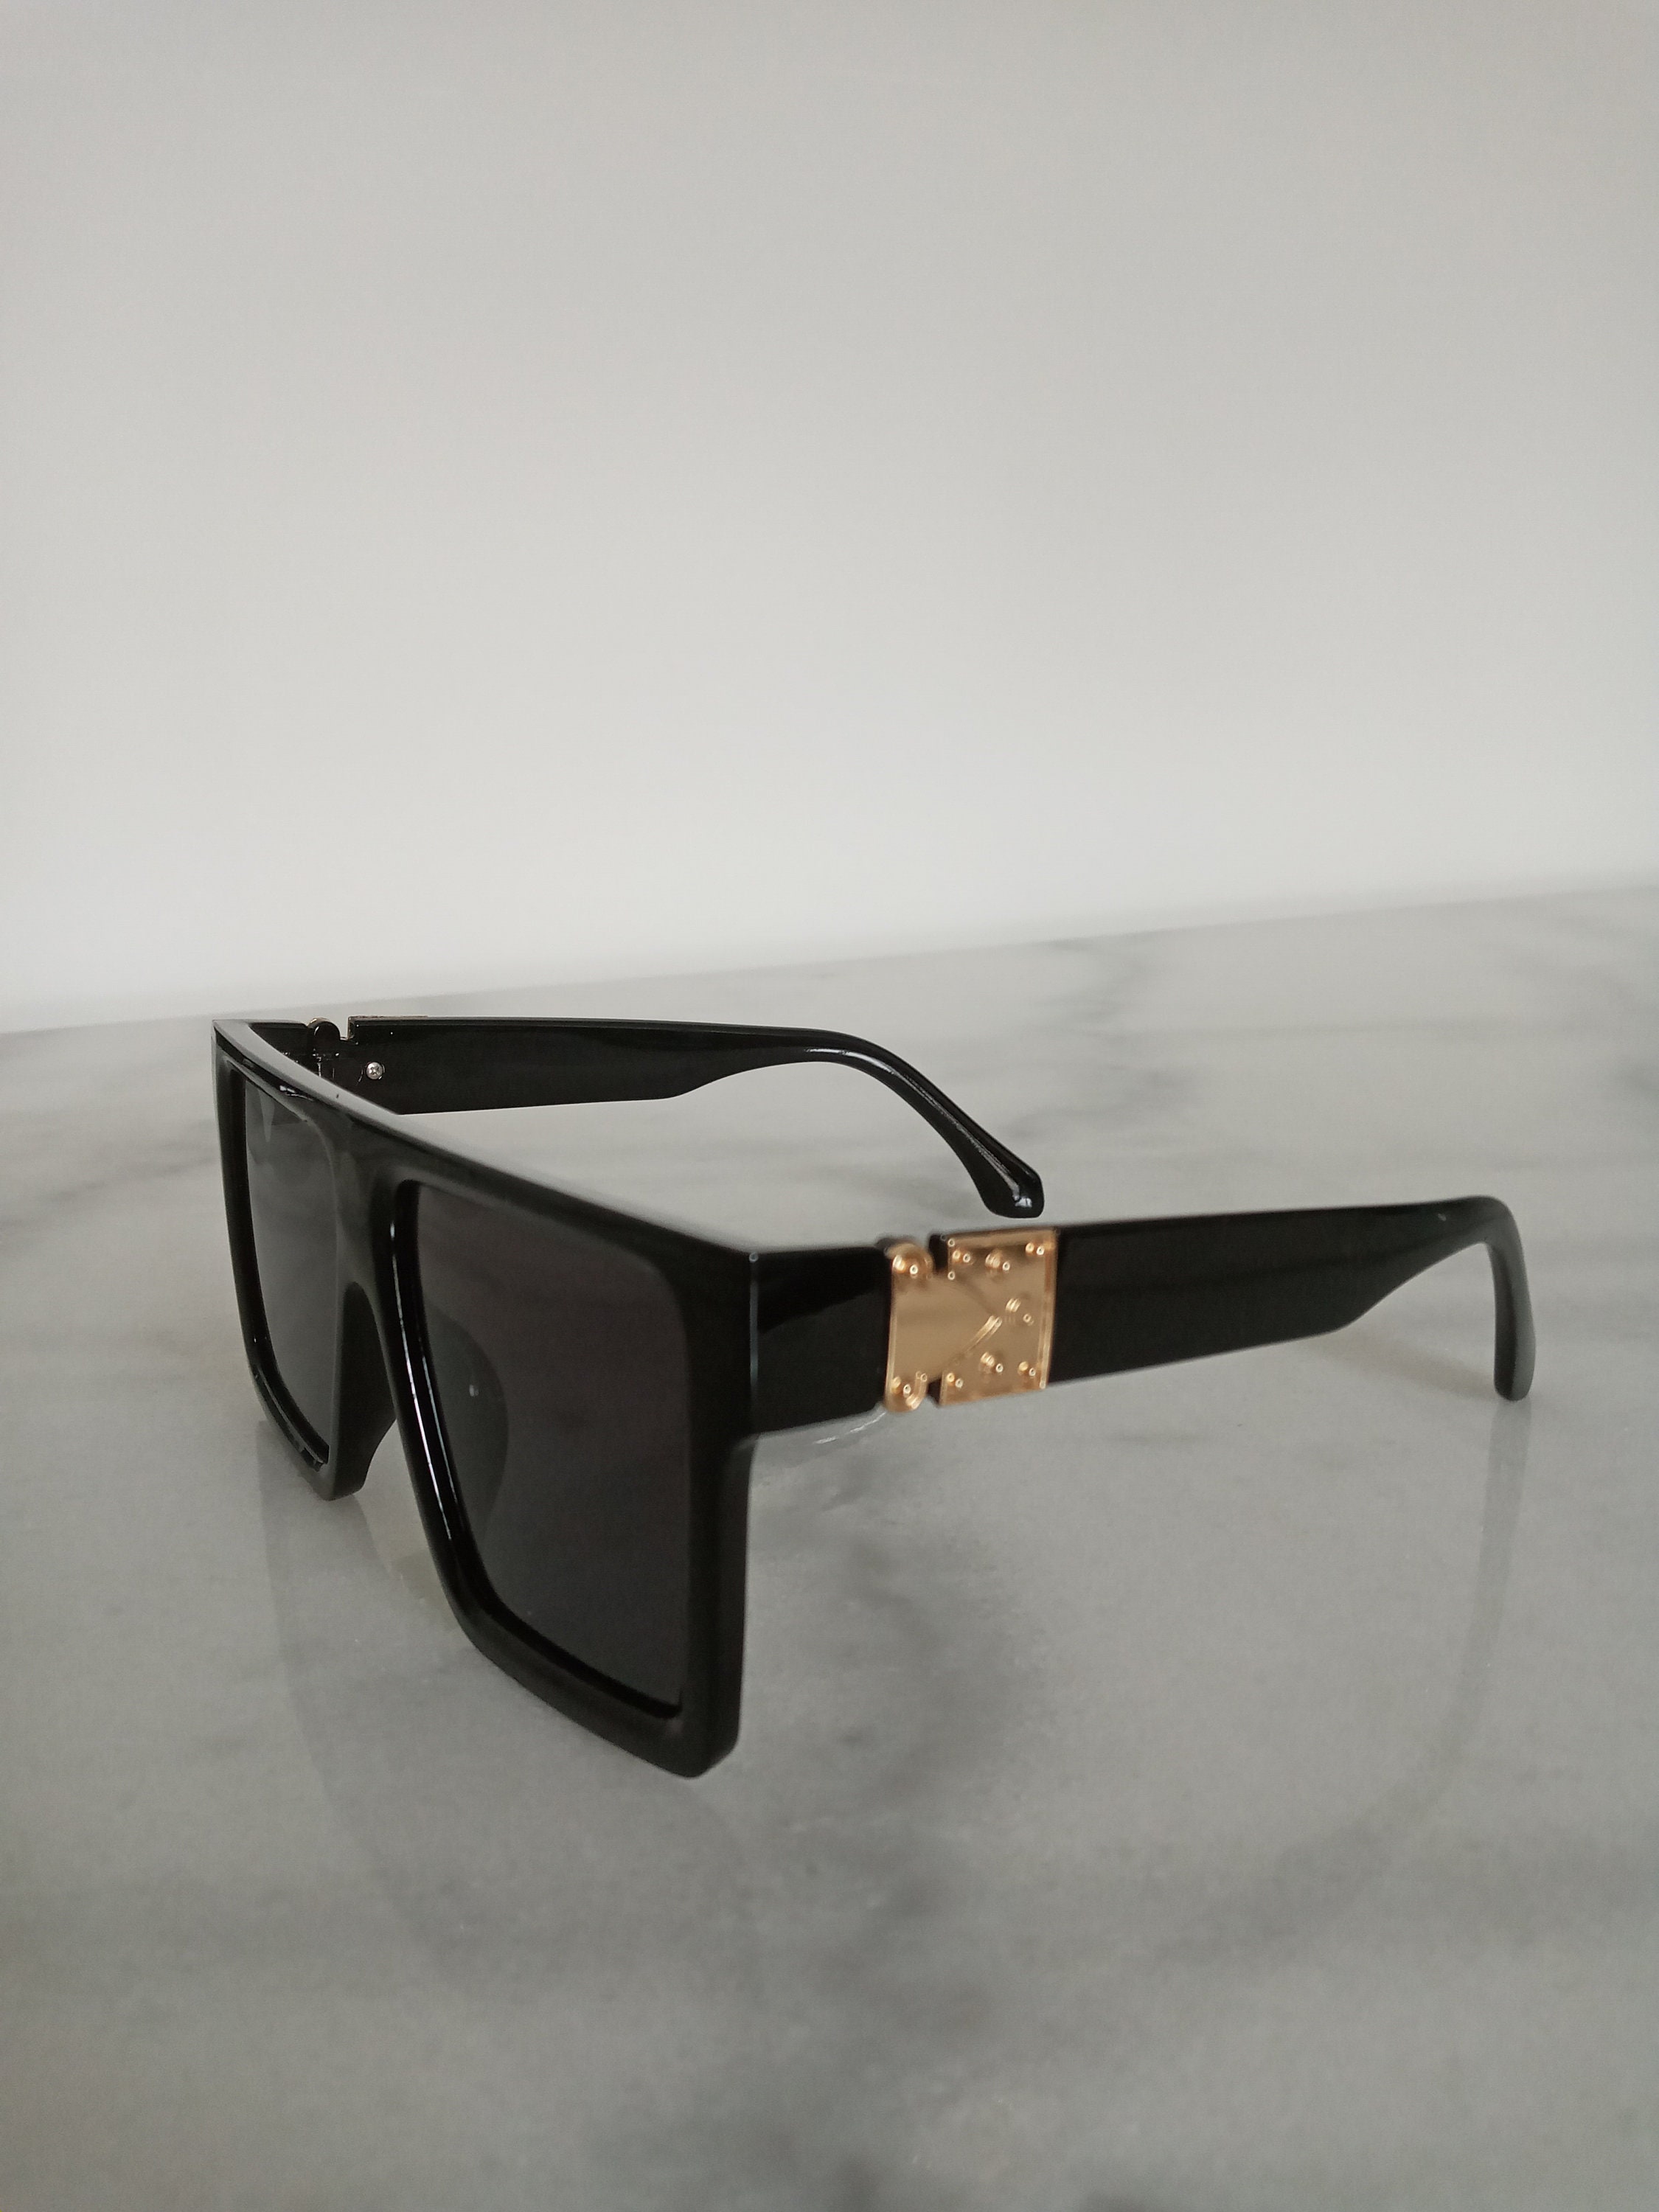 Louis vuitton sunglasses - Etsy